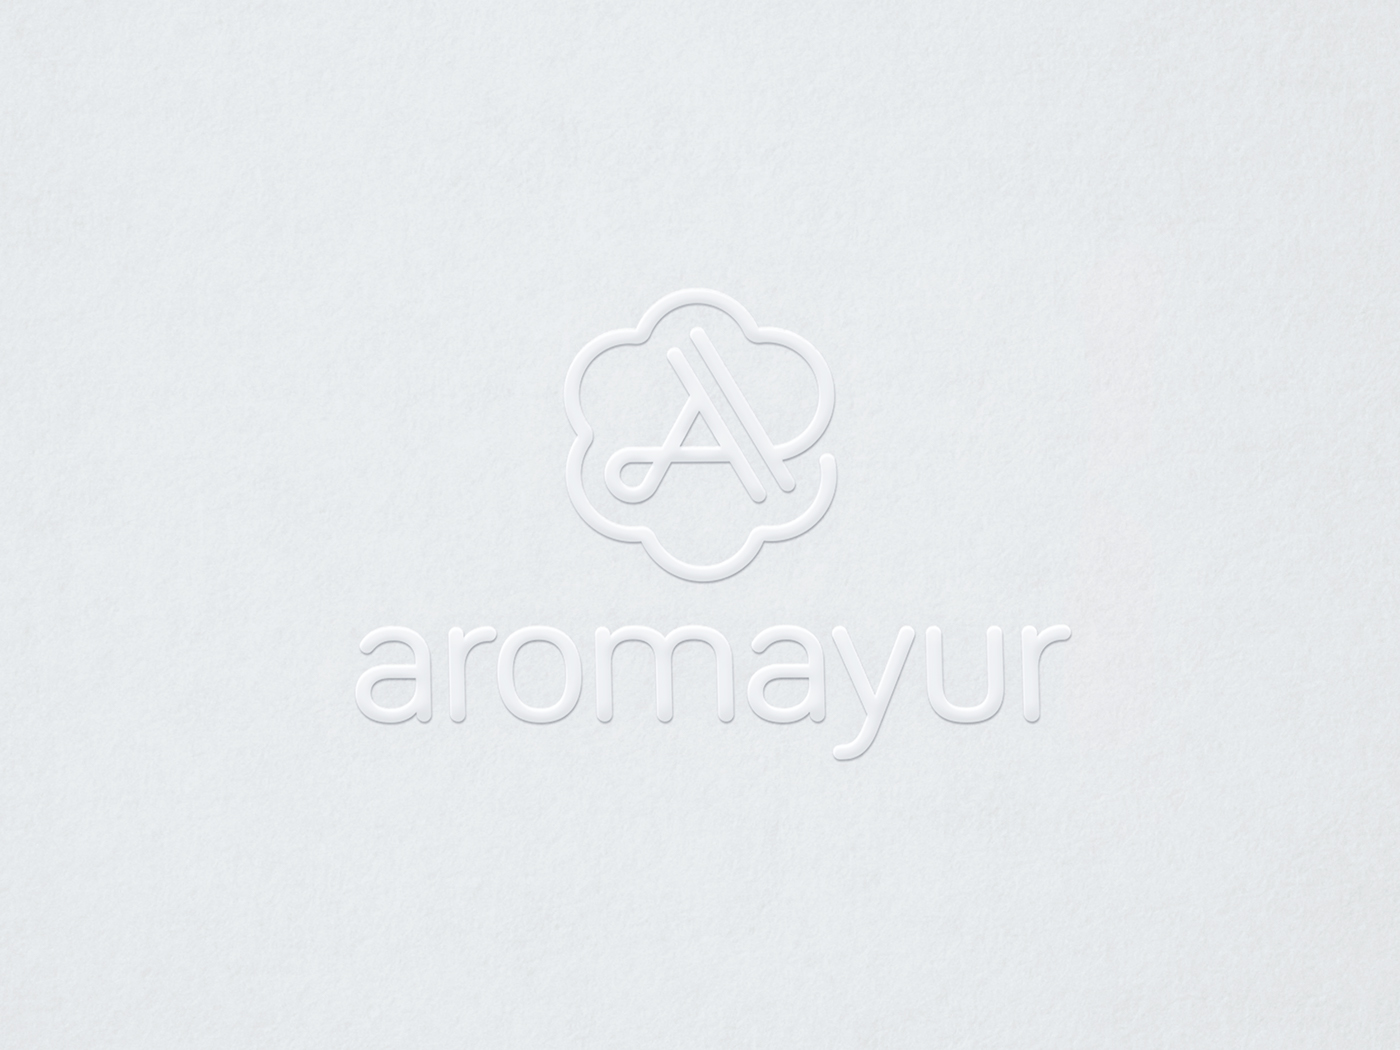 Aromayur logo en relief